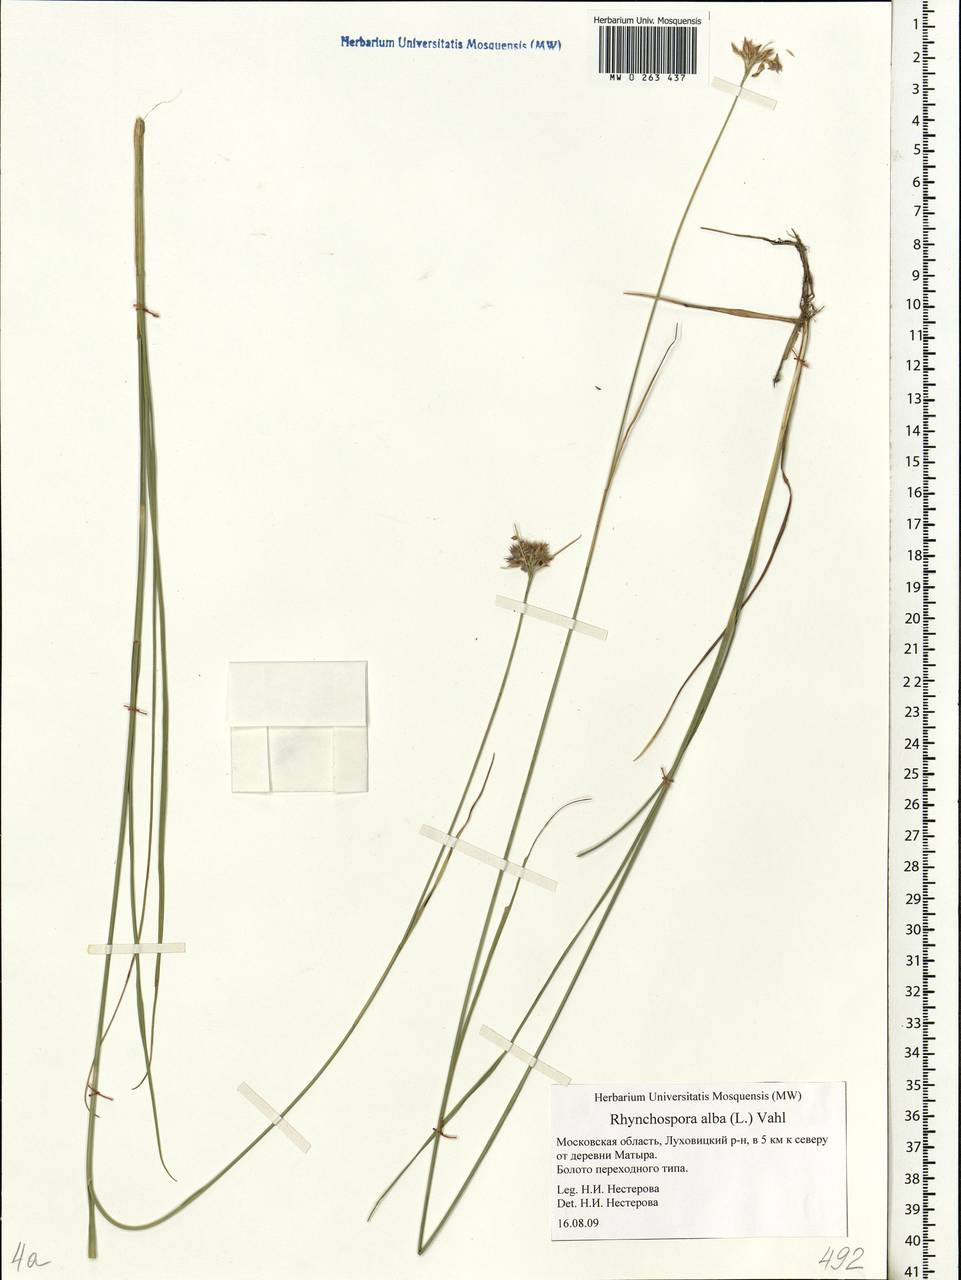 Rhynchospora alba (L.) Vahl, Eastern Europe, Moscow region (E4a) (Russia)